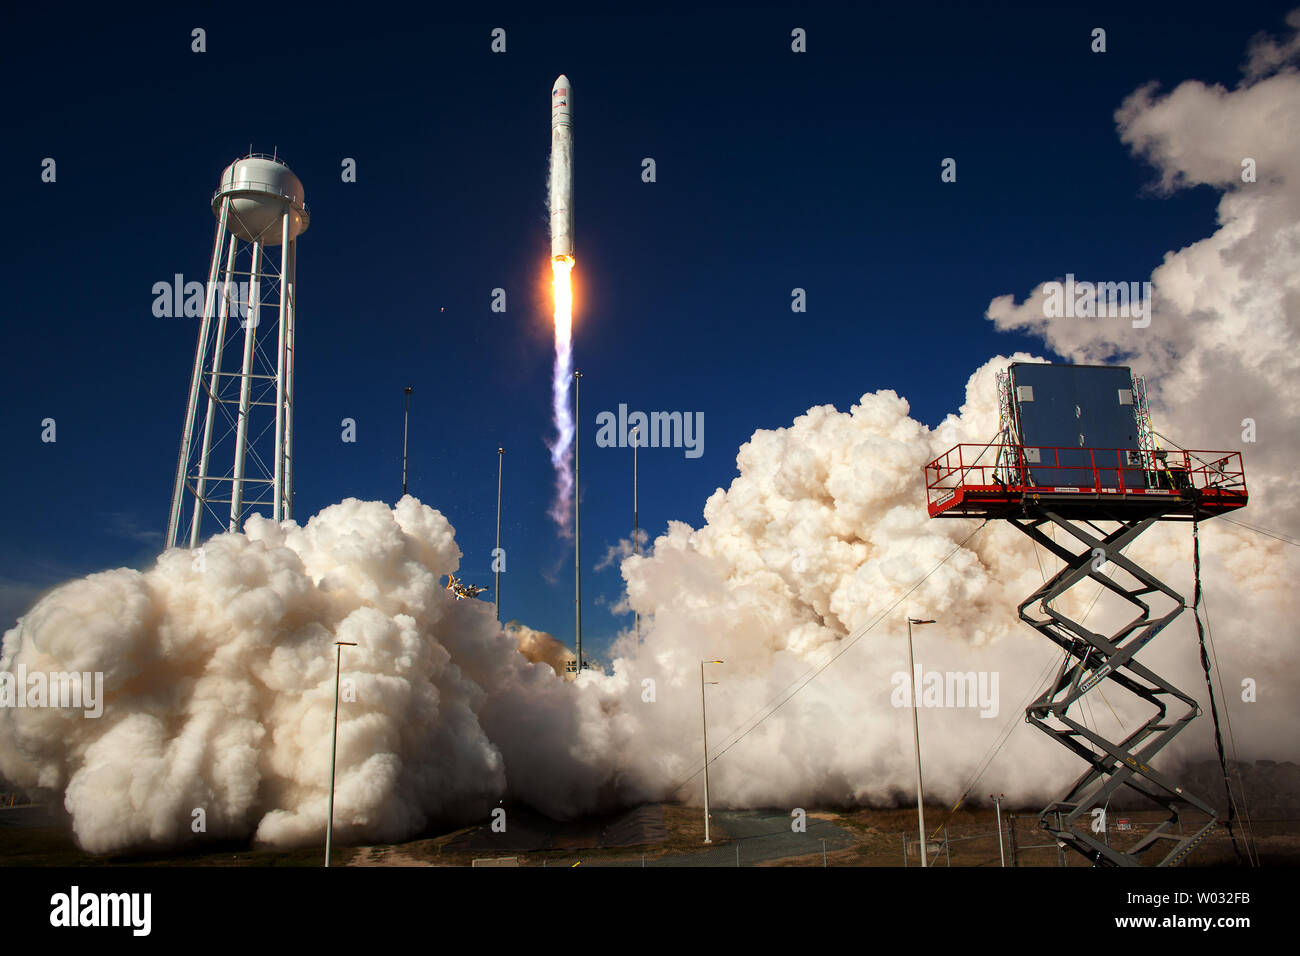 La Orbital Sciences Corporation Antares rocket è visto come si lancia dal PAD-0A della Mid-Atlantic Spaceport regionale (MARS) presso la NASA Wallops Flight Facility su Wallops Island, Virginia, Domenica, 21 aprile 2013. Il test di lancio ha segnato il primo volo di Antares e il primo lancio di un razzo dal PAD-0A. L'Antares rocket ha consegnato la massa equivalente di un veicolo spaziale, una cosiddetta massa payload simulato, in orbita terrestre. UPI/NASA/Bill Ingalls Foto Stock